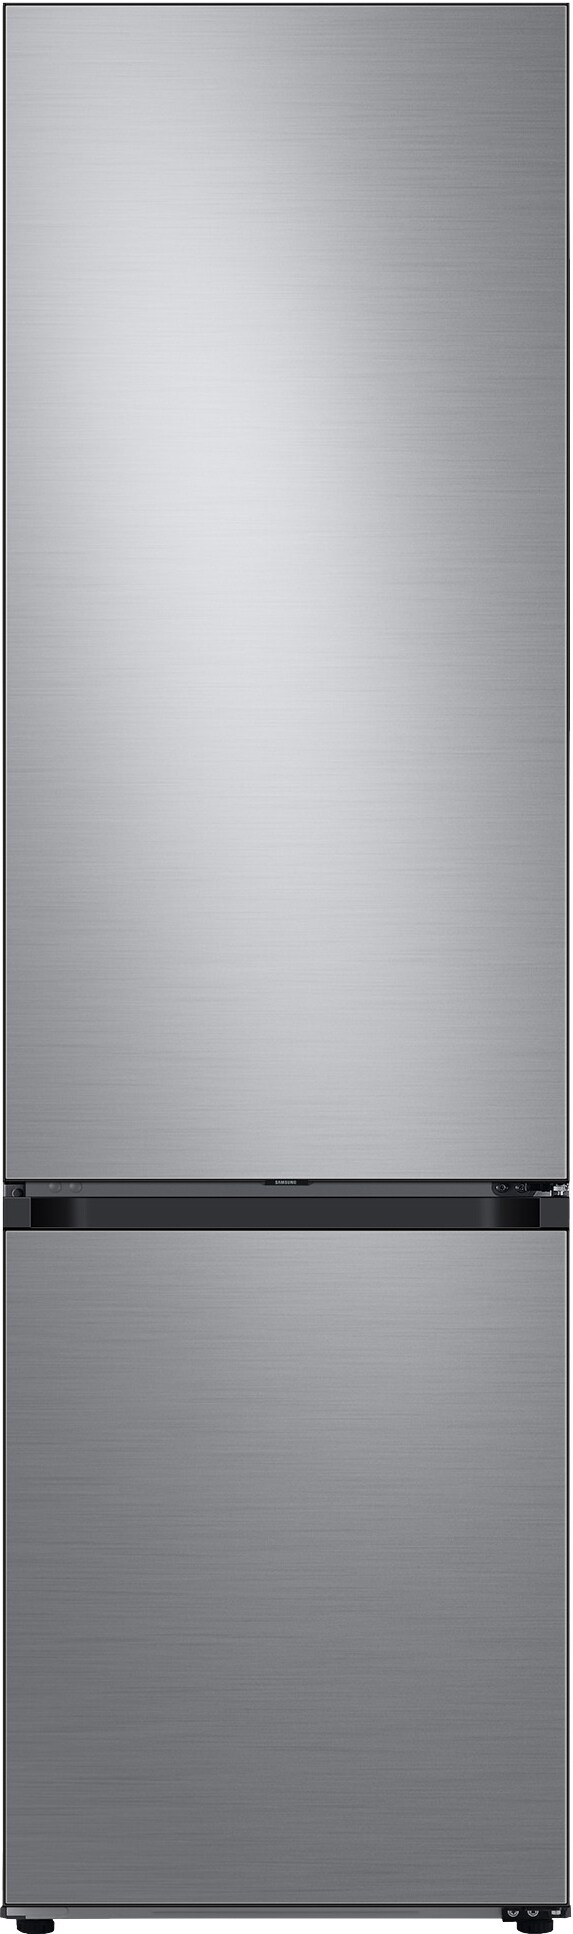 Billede af Samsung Bespoke køleskab/fryser RL38A7B63S9/EF (silver)